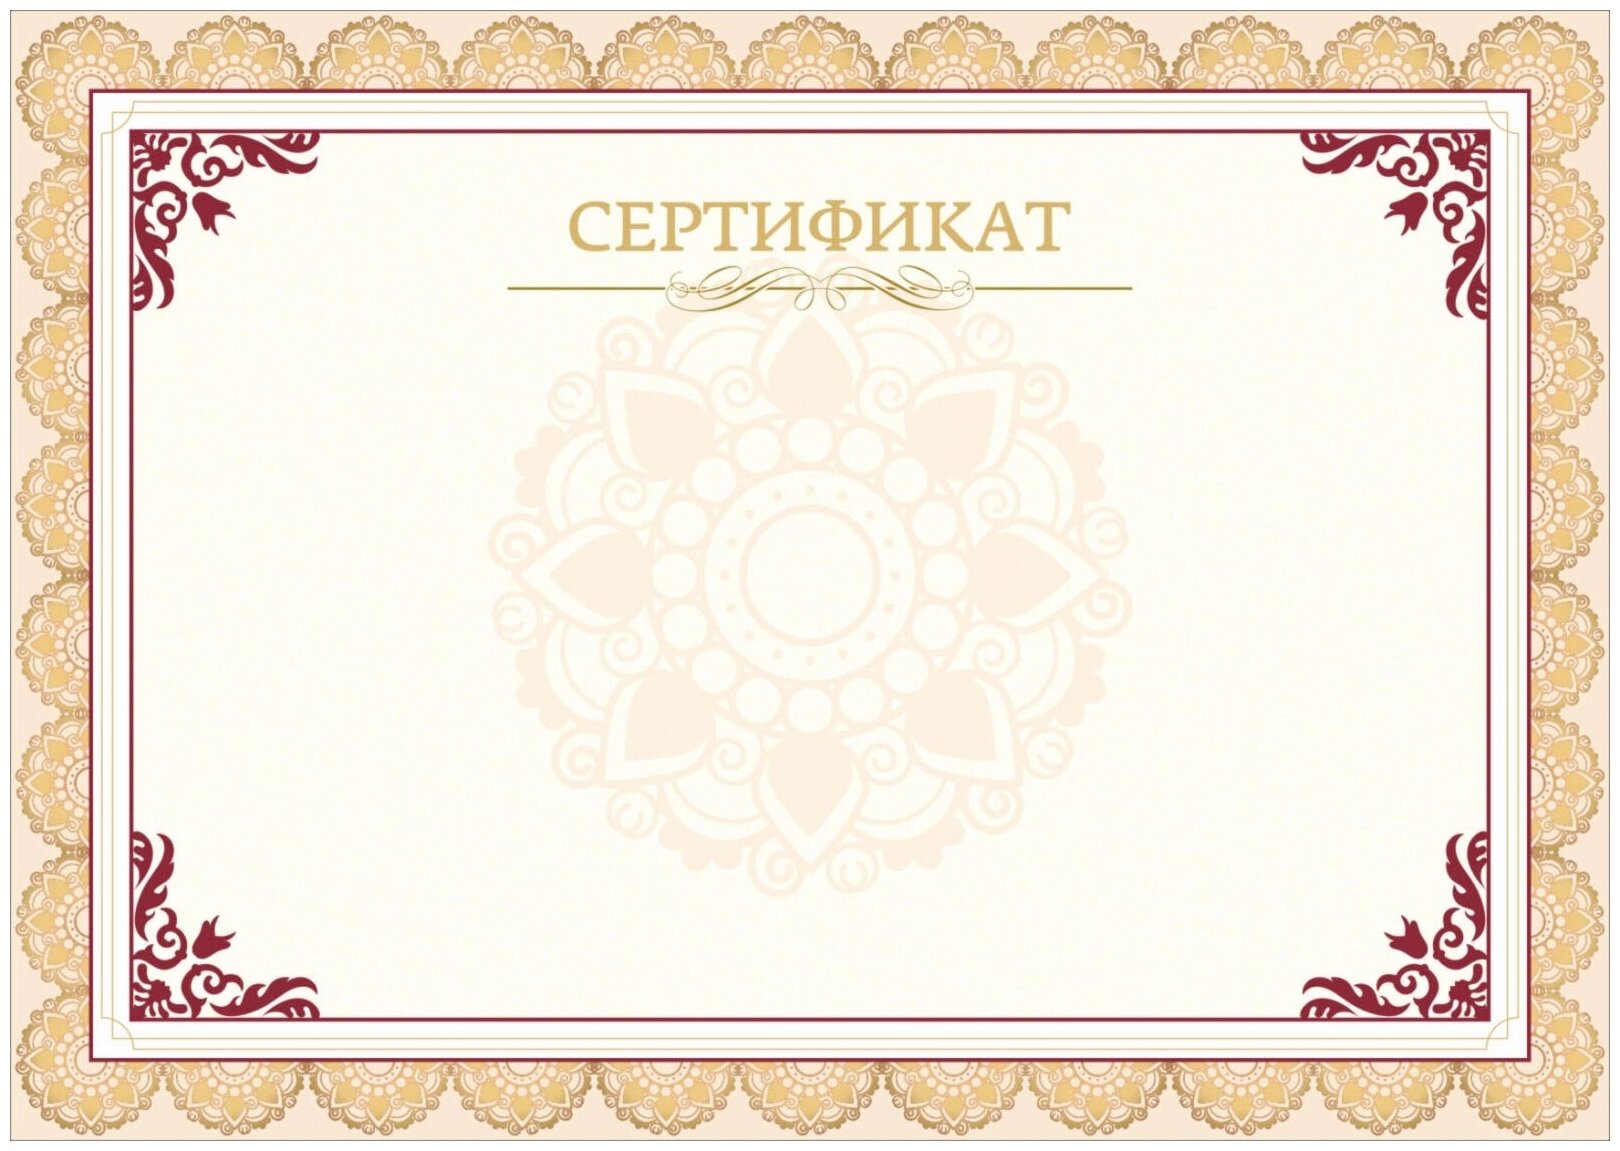 Сертификат Комус А4 горизонтальный бланк бежевая рамка тиснение фольгой